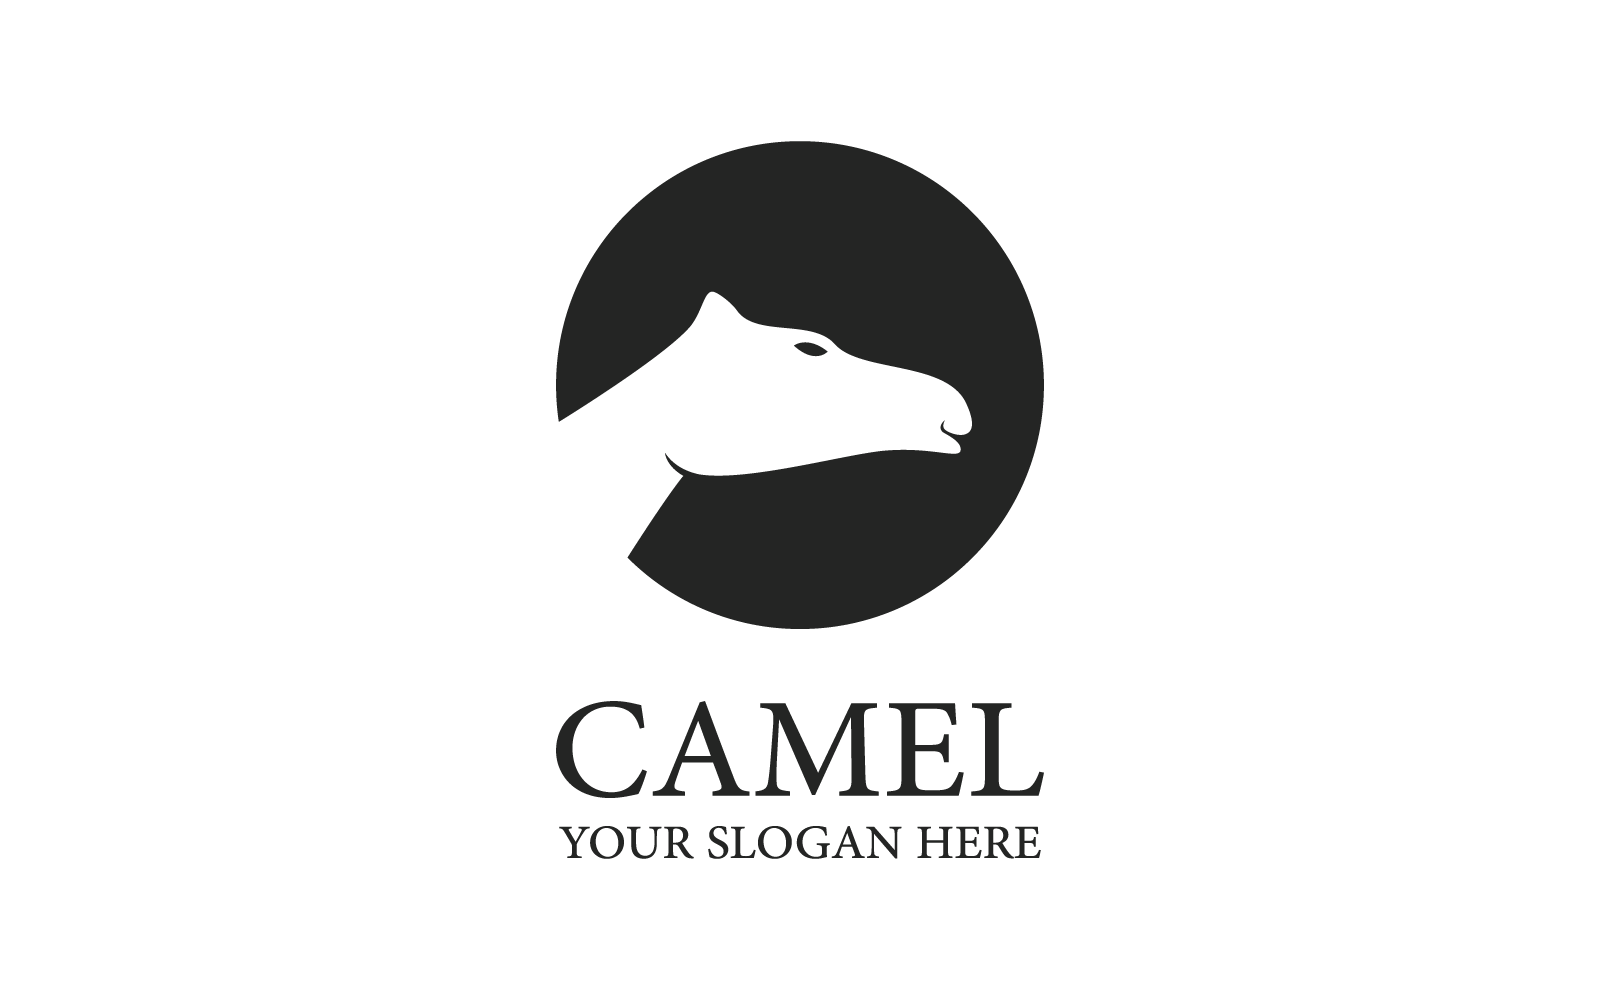 Camel illustration flat design logo template